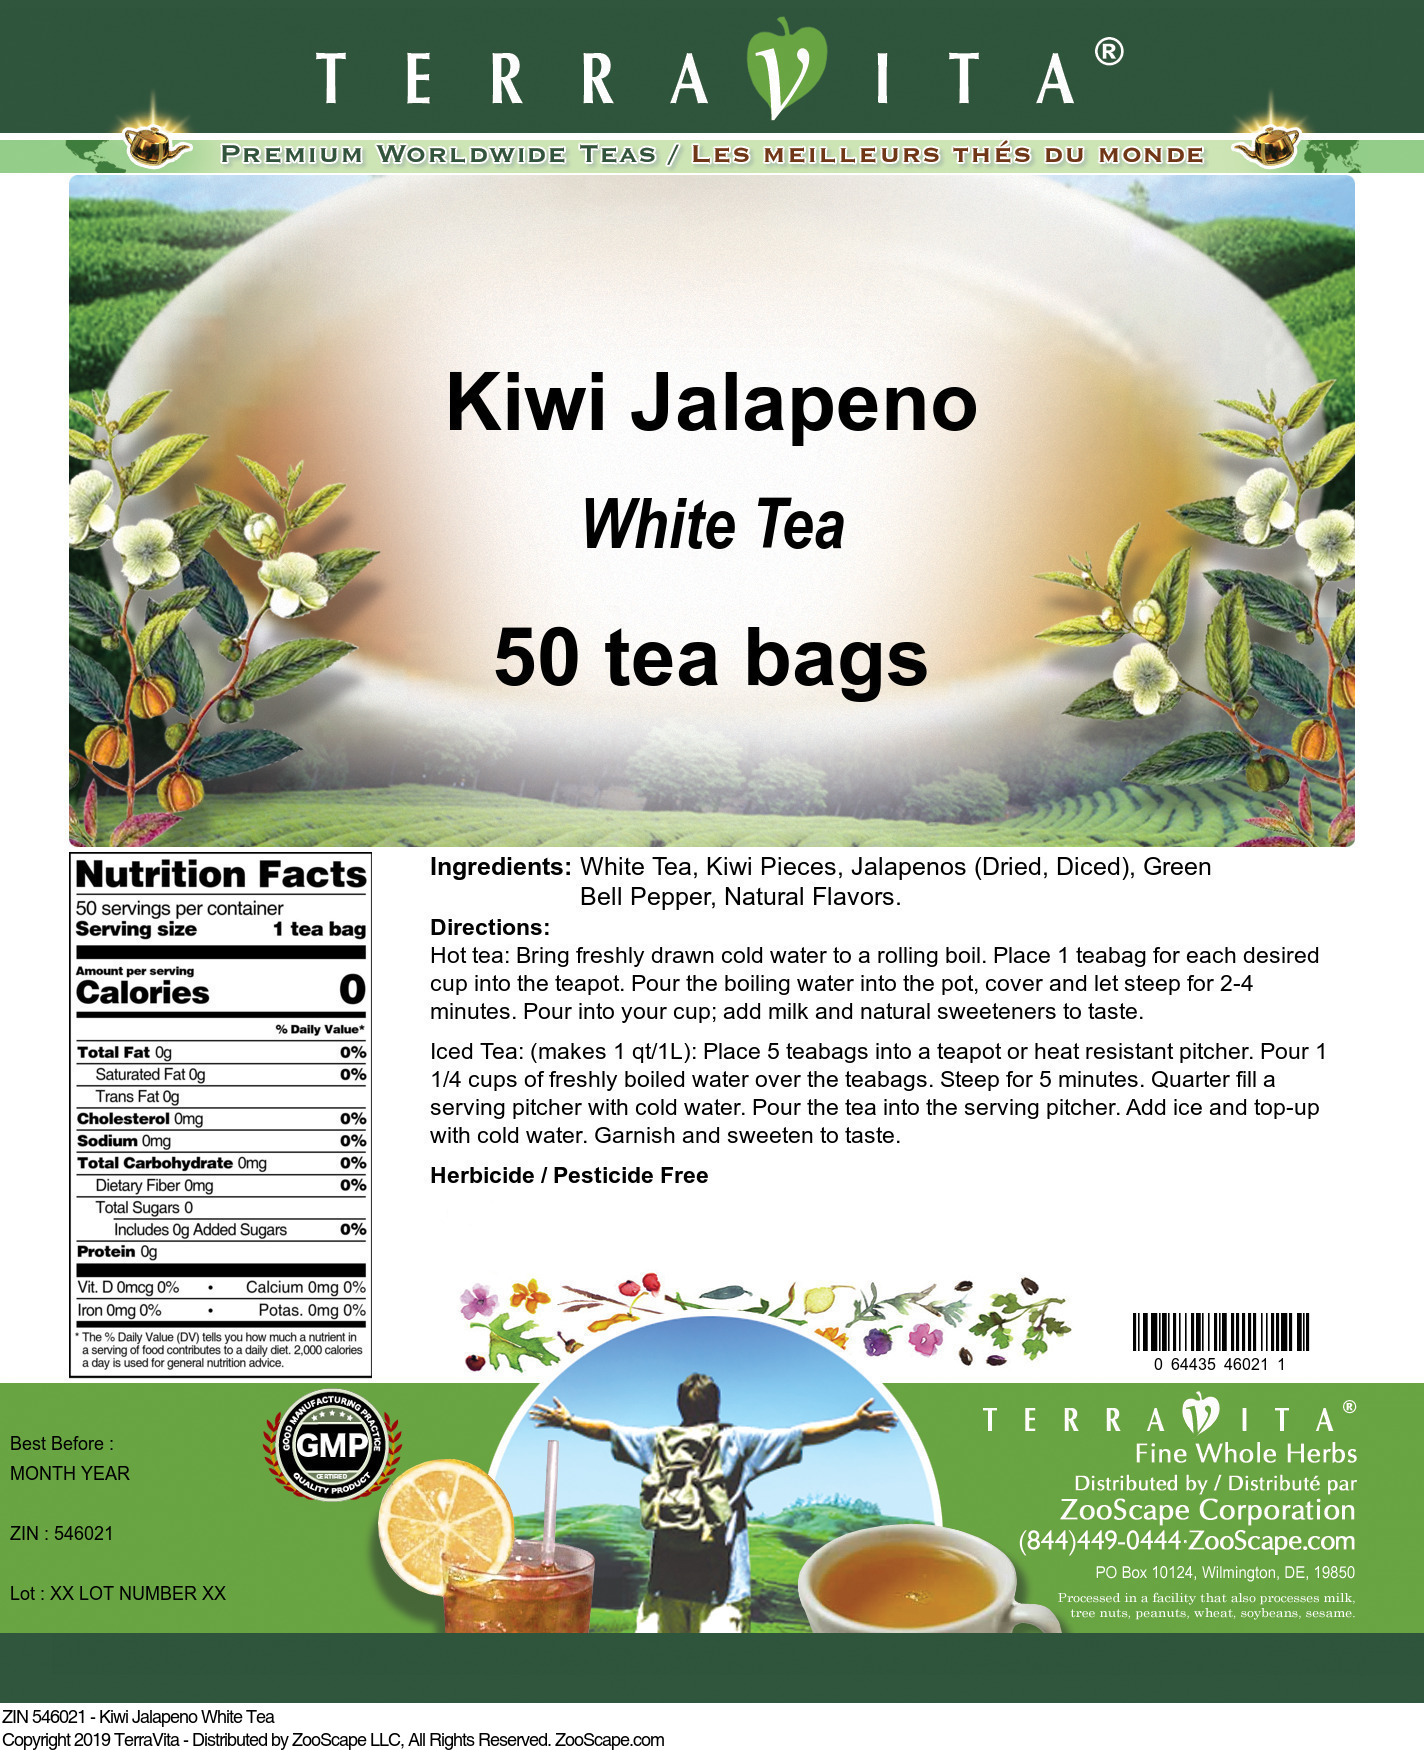 Kiwi Jalapeno White Tea - Label